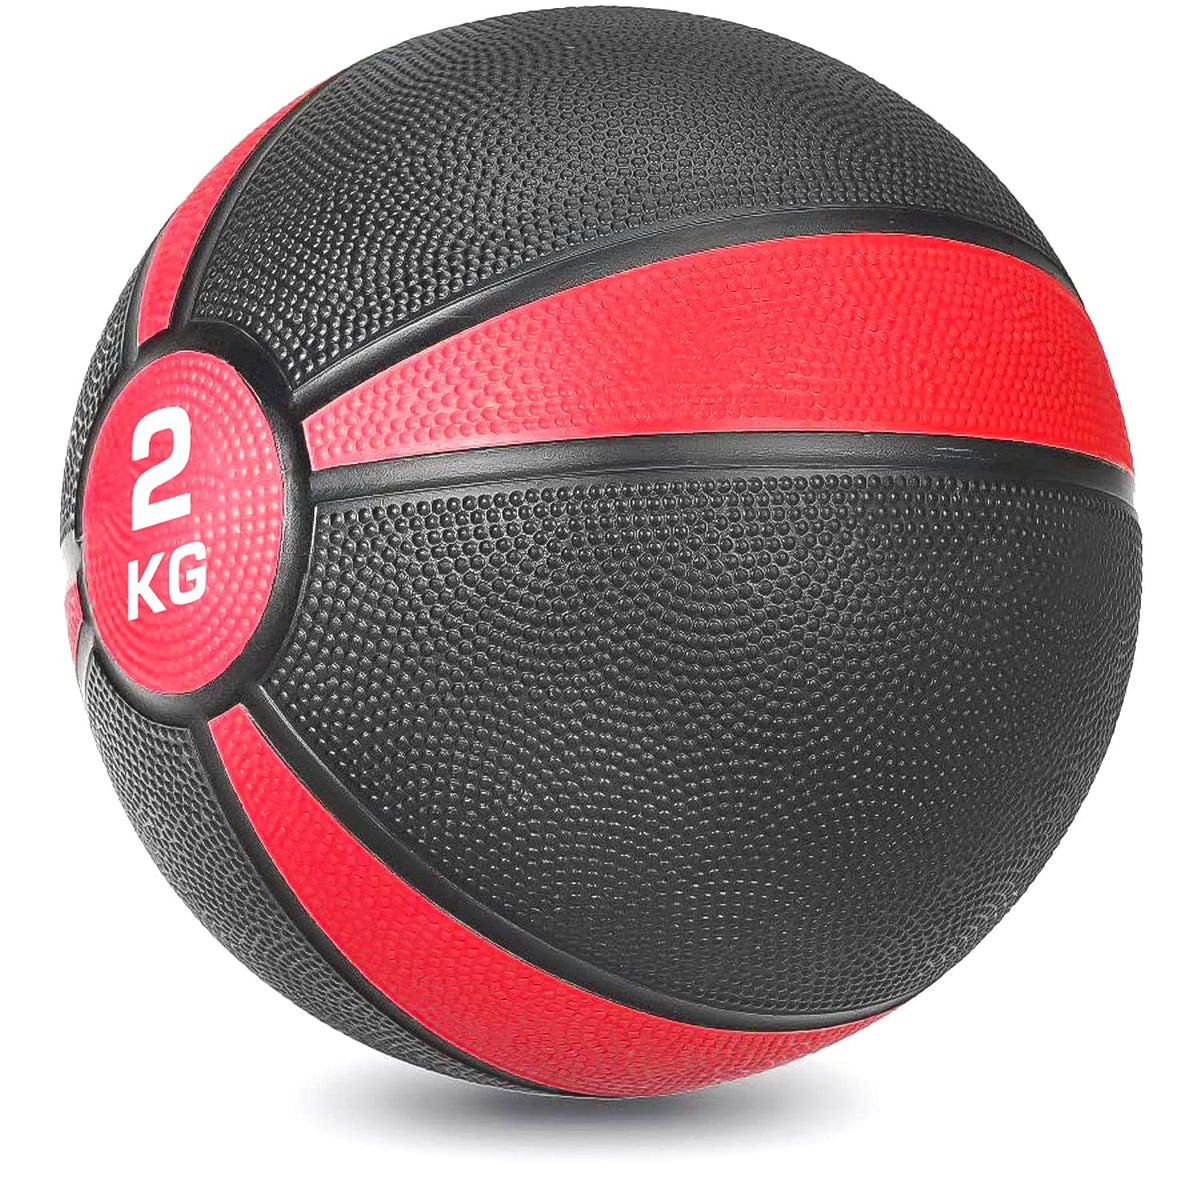 STRAUSS Medicine, Weight Training Ball, 2 Kg, (Red)